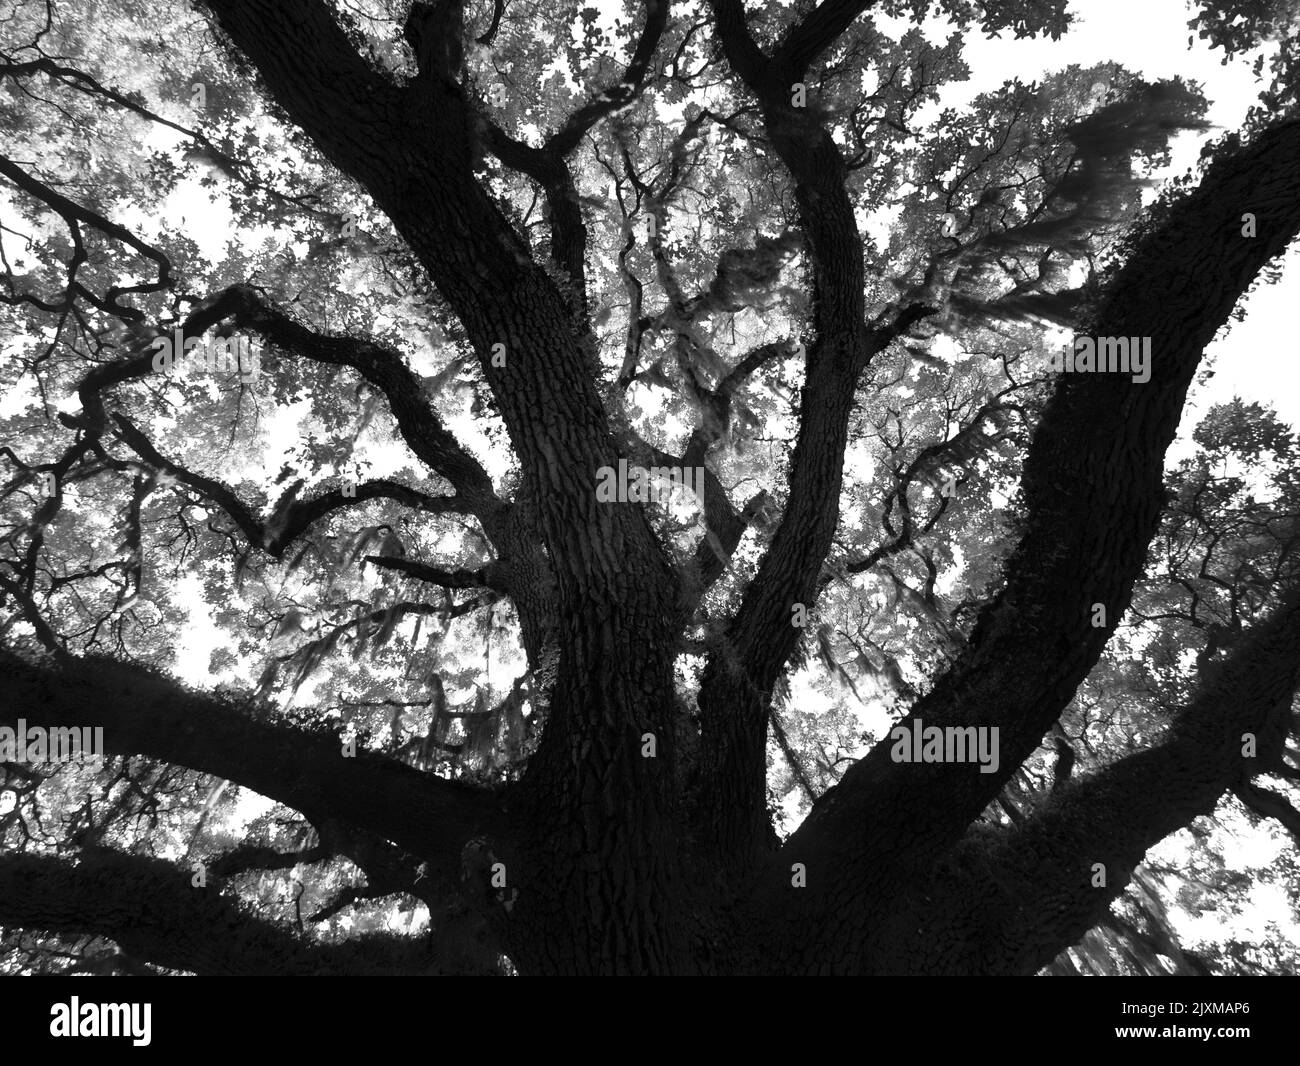 Infrarosso immagine rossa in bianco e nero di un albero di quercia vivo nel Washington Oaks Gardens state Park in Florida USA Foto Stock